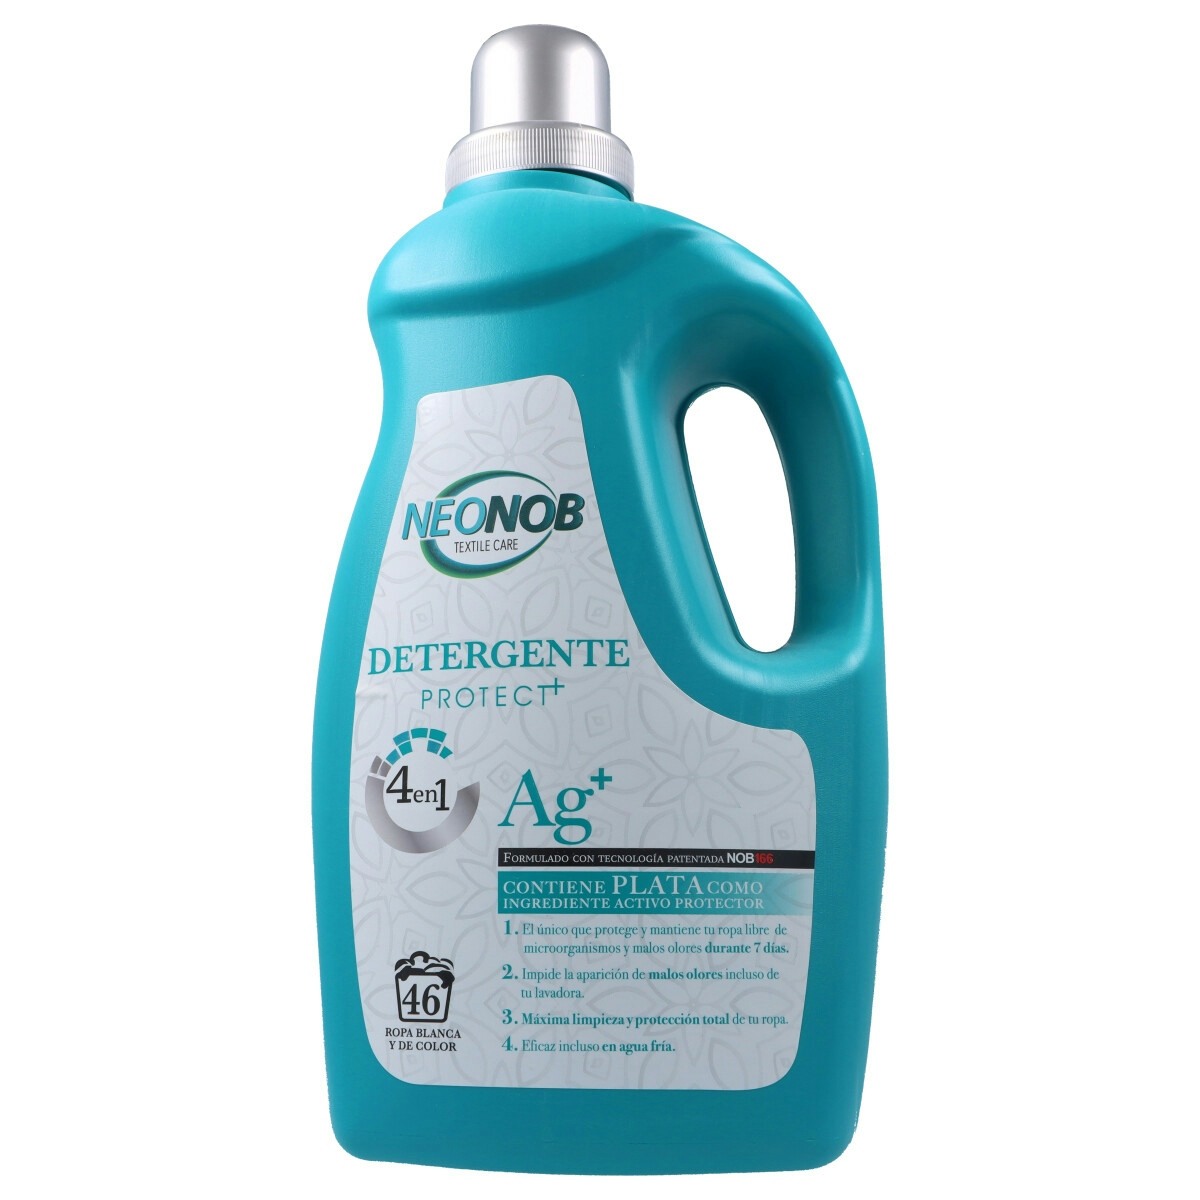 Detergente liquido NEONOB 3 lt